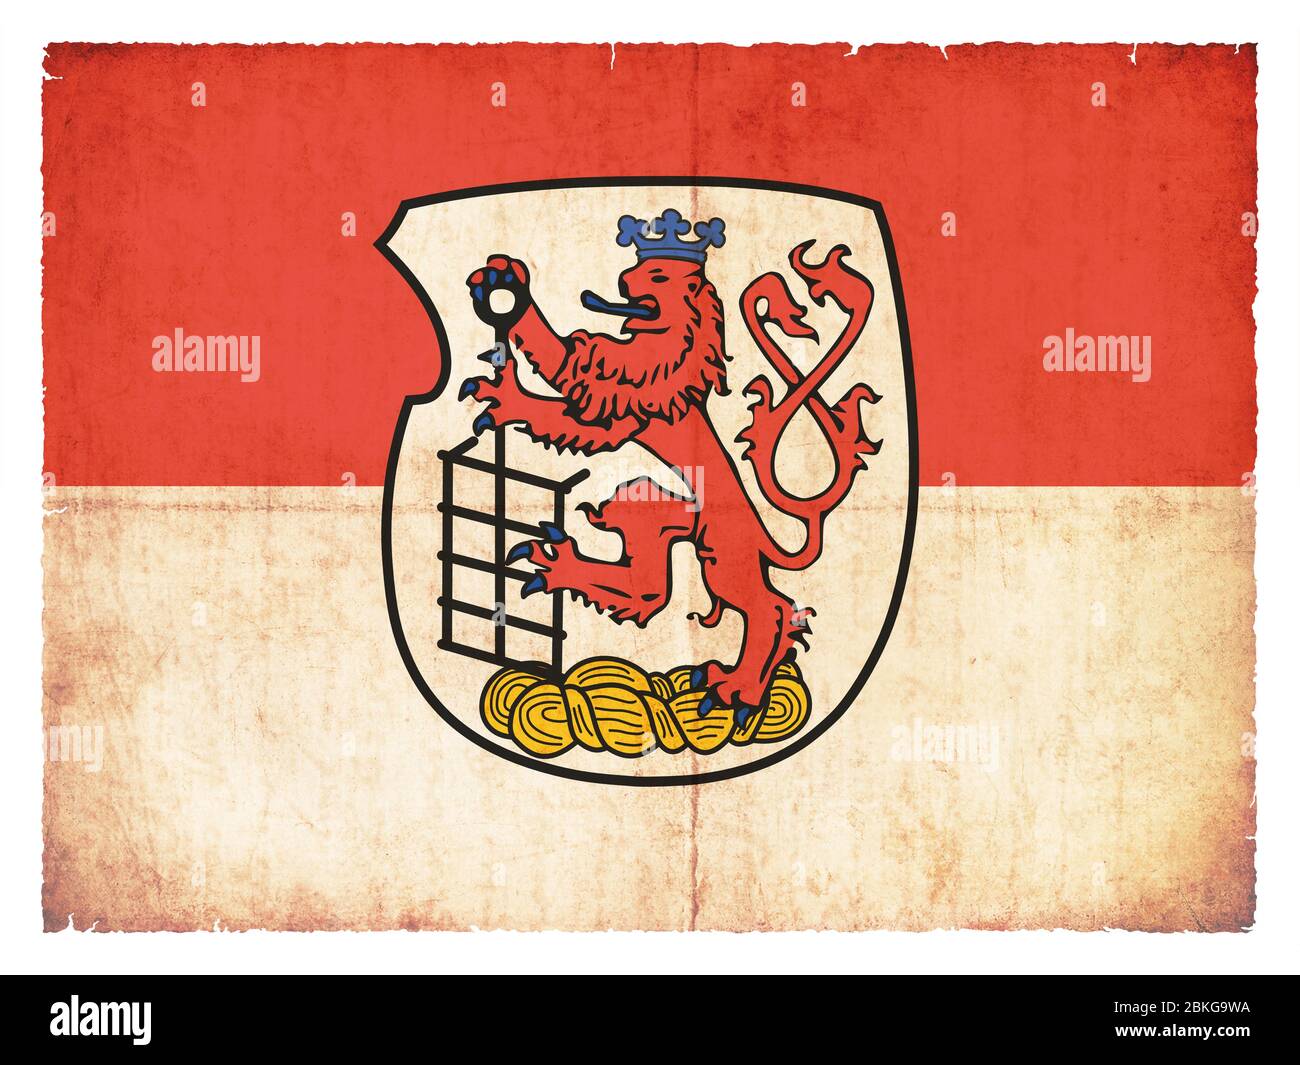 Bandera de la ciudad alemana Wuppertal (Renania del Norte-Westfalia, Alemania) creado en estilo grunge Foto de stock